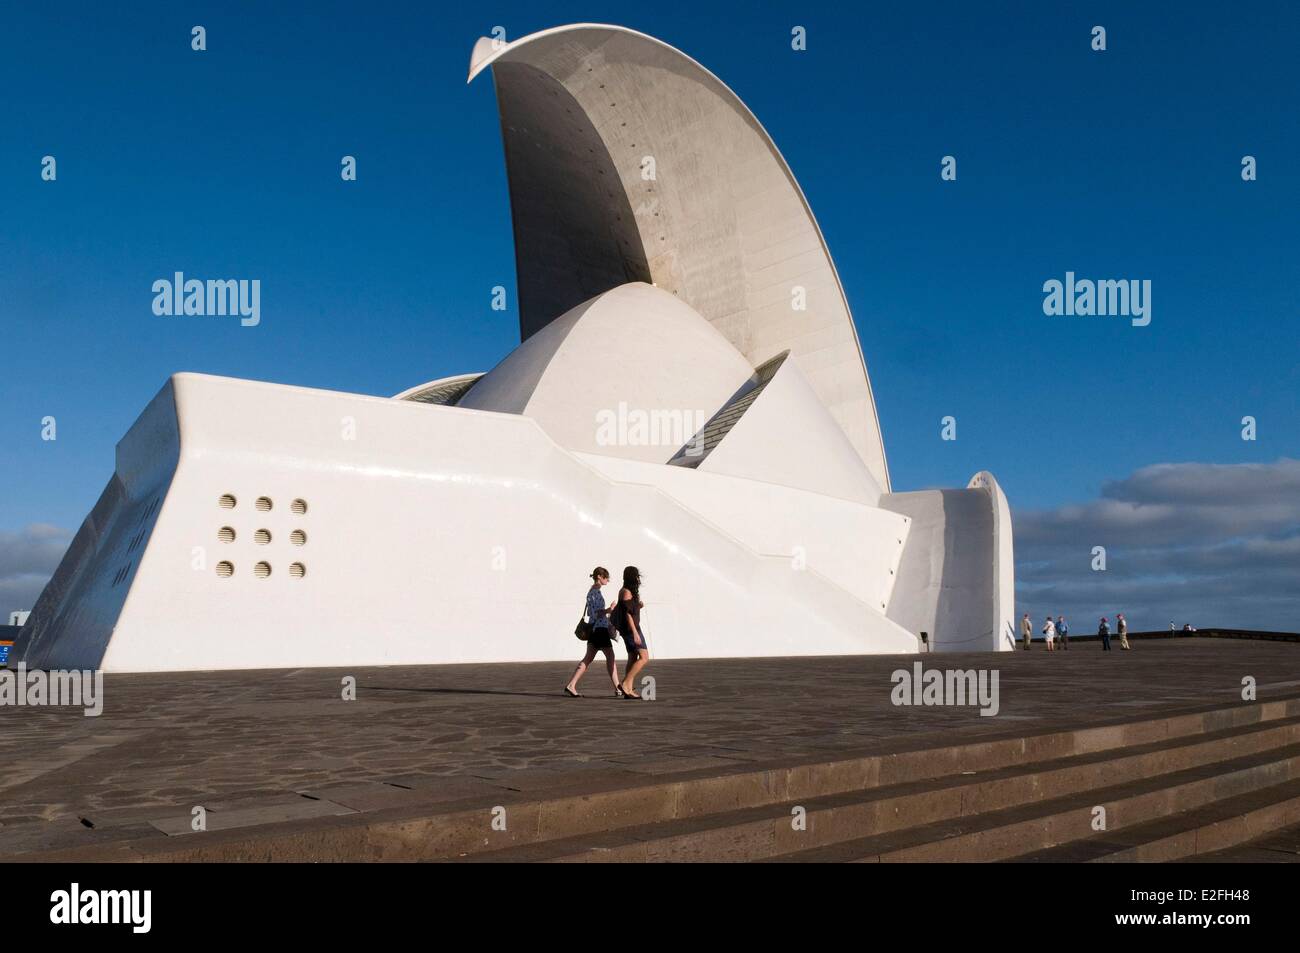 L'Espagne, Iles Canaries, Tenerife, l'île Santa Cruz de Tenerife, de l'opéra par l'architecte Santiago Calatrava Banque D'Images